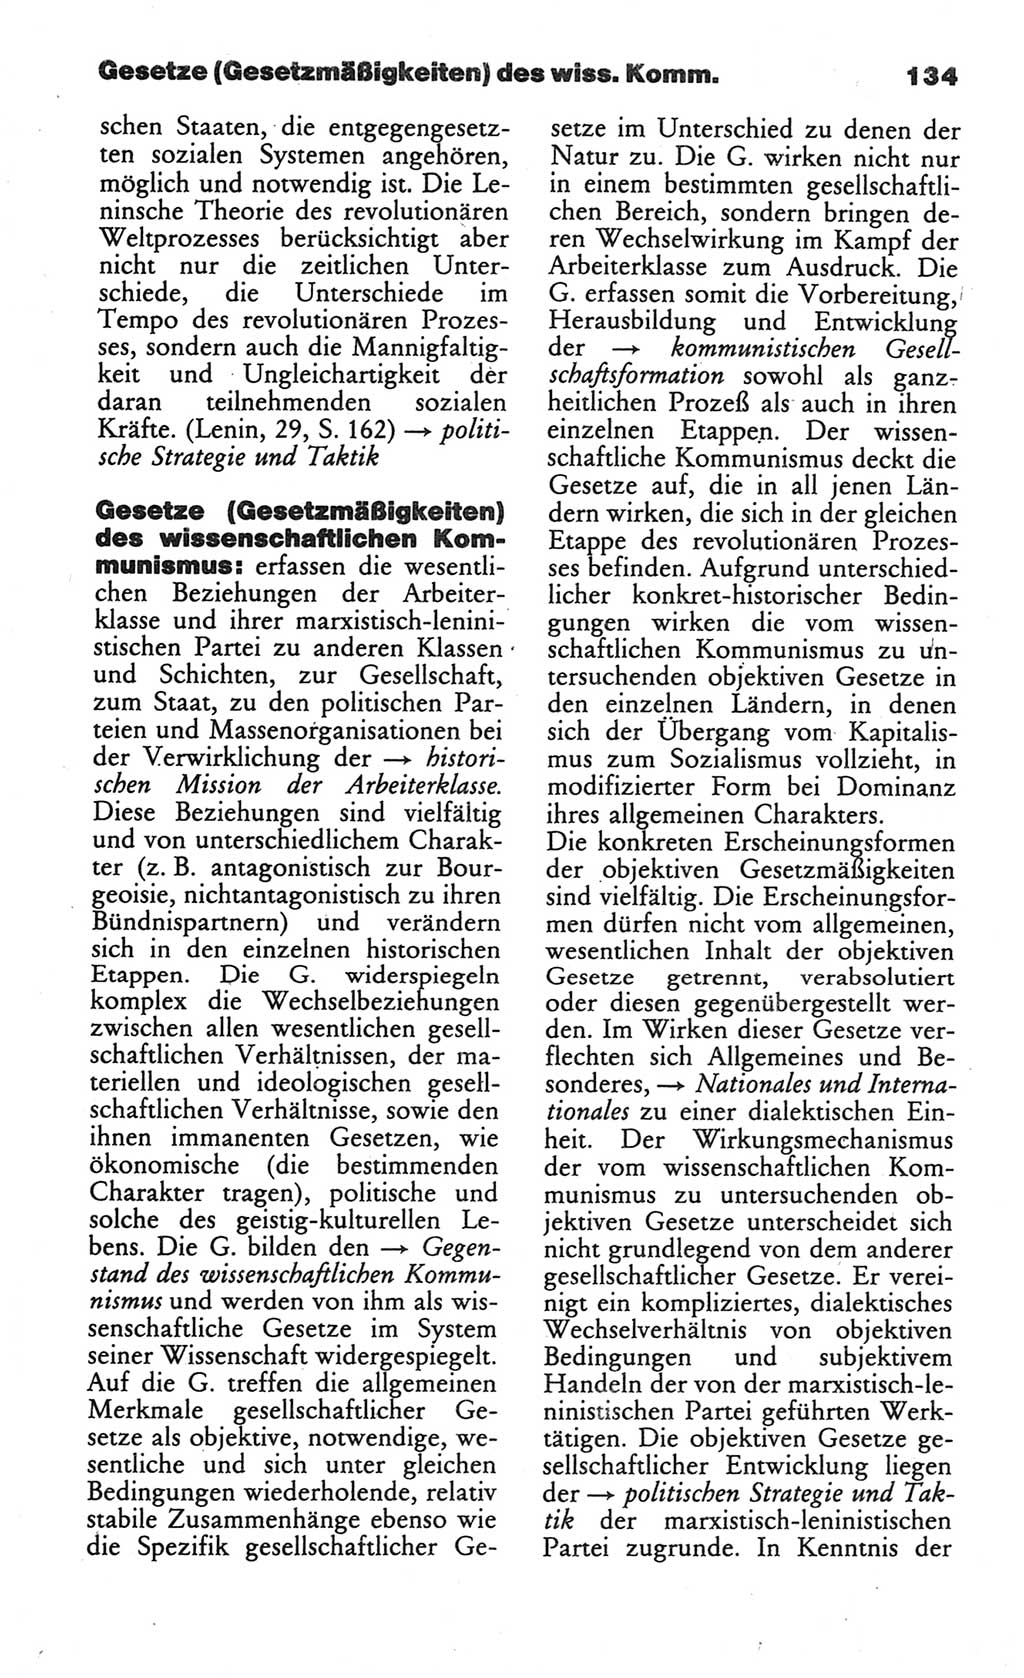 Wörterbuch des wissenschaftlichen Kommunismus [Deutsche Demokratische Republik (DDR)] 1984, Seite 134 (Wb. wiss. Komm. DDR 1984, S. 134)